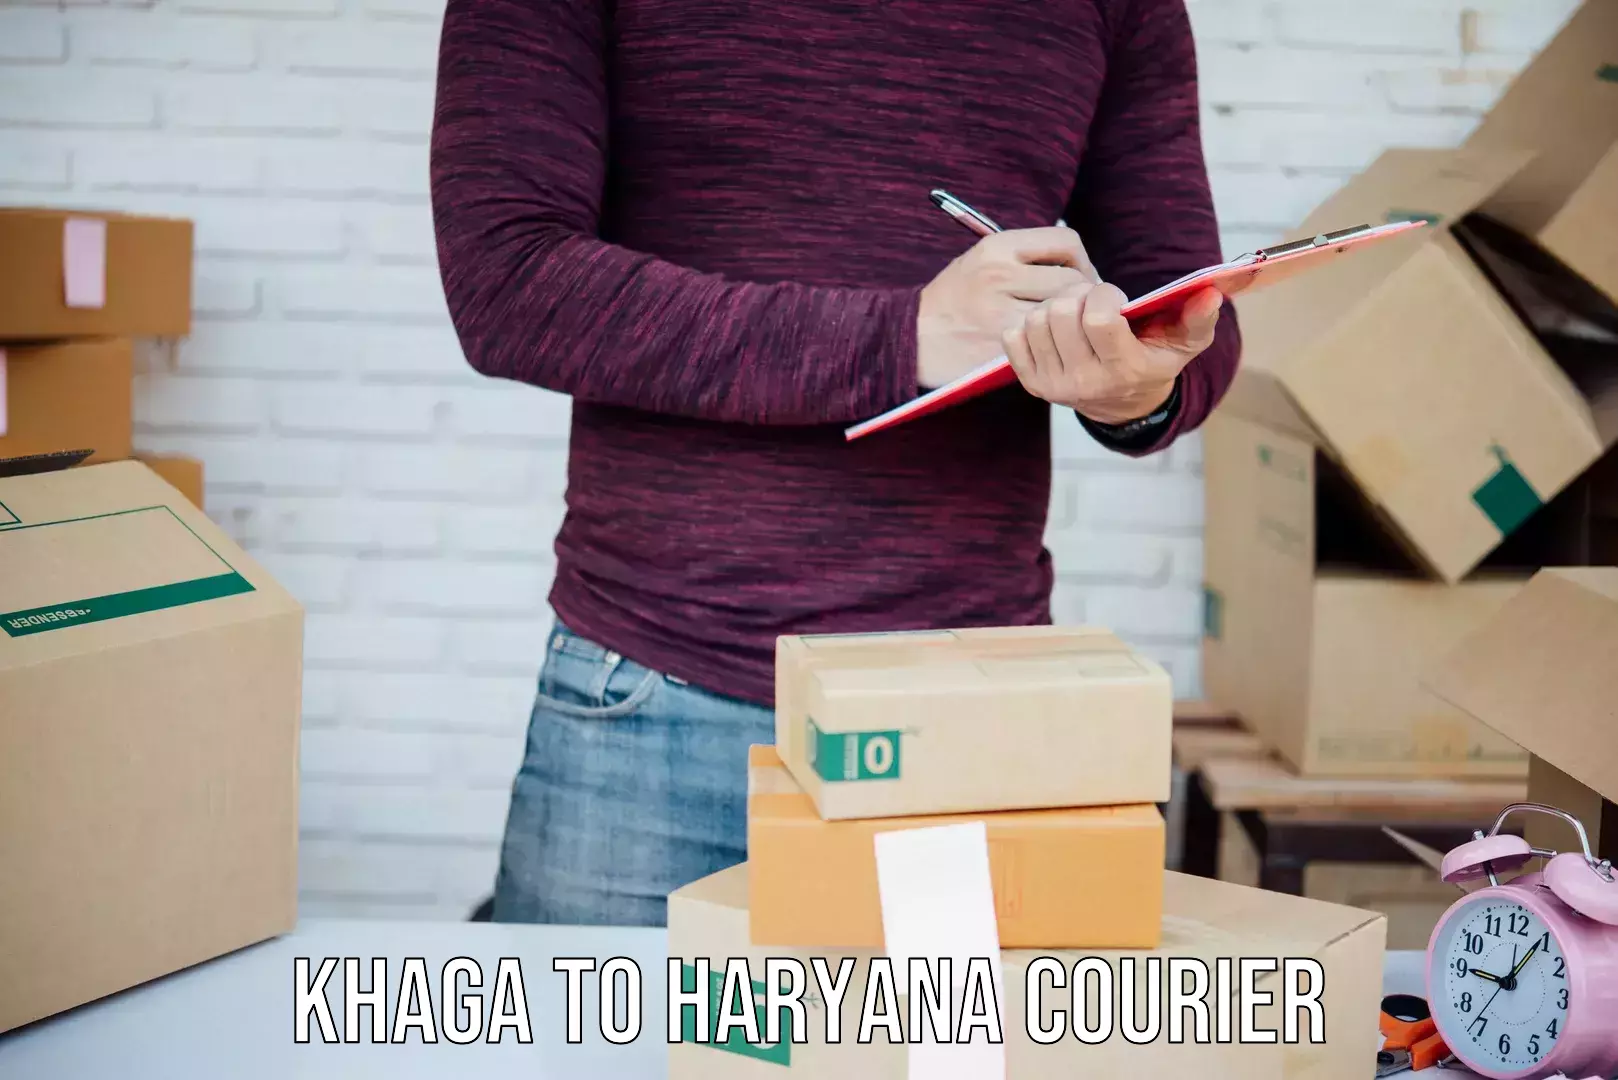 Global delivery options Khaga to Karnal